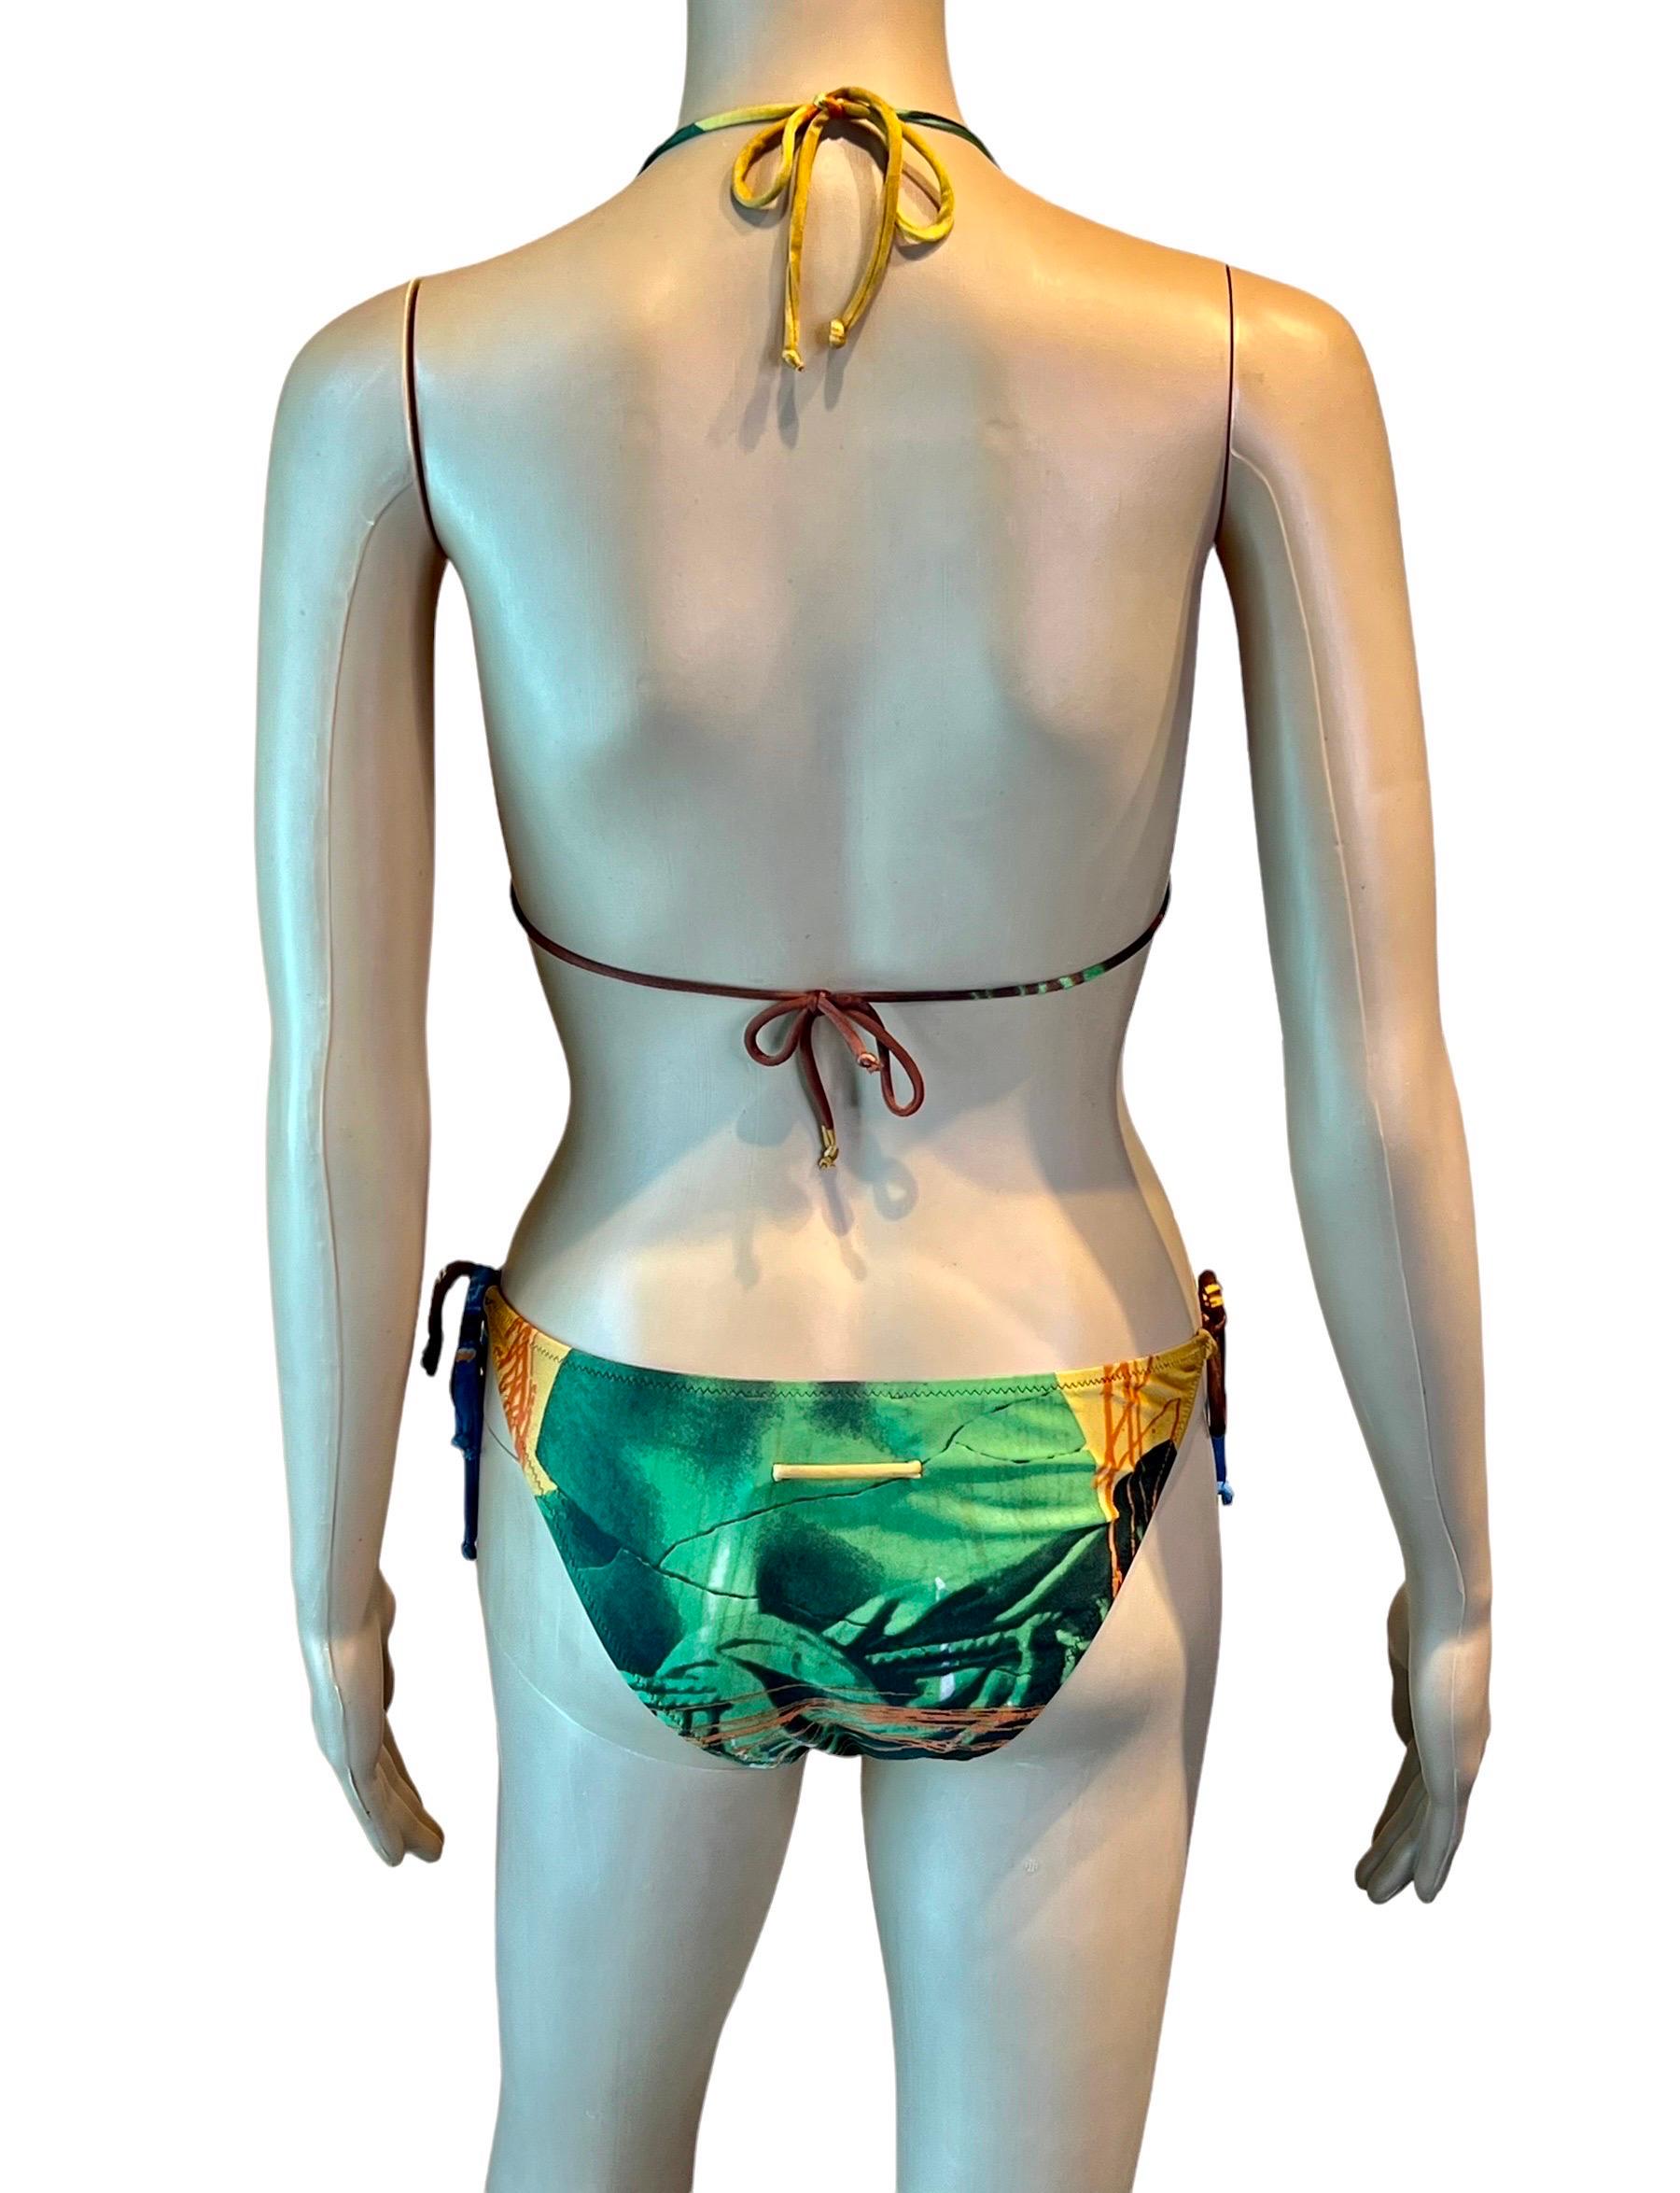 Brown Jean Paul Gaultier S/S 1999 Venus de Milo Bikini Swimwear Swimsuit 2 Piece Set For Sale